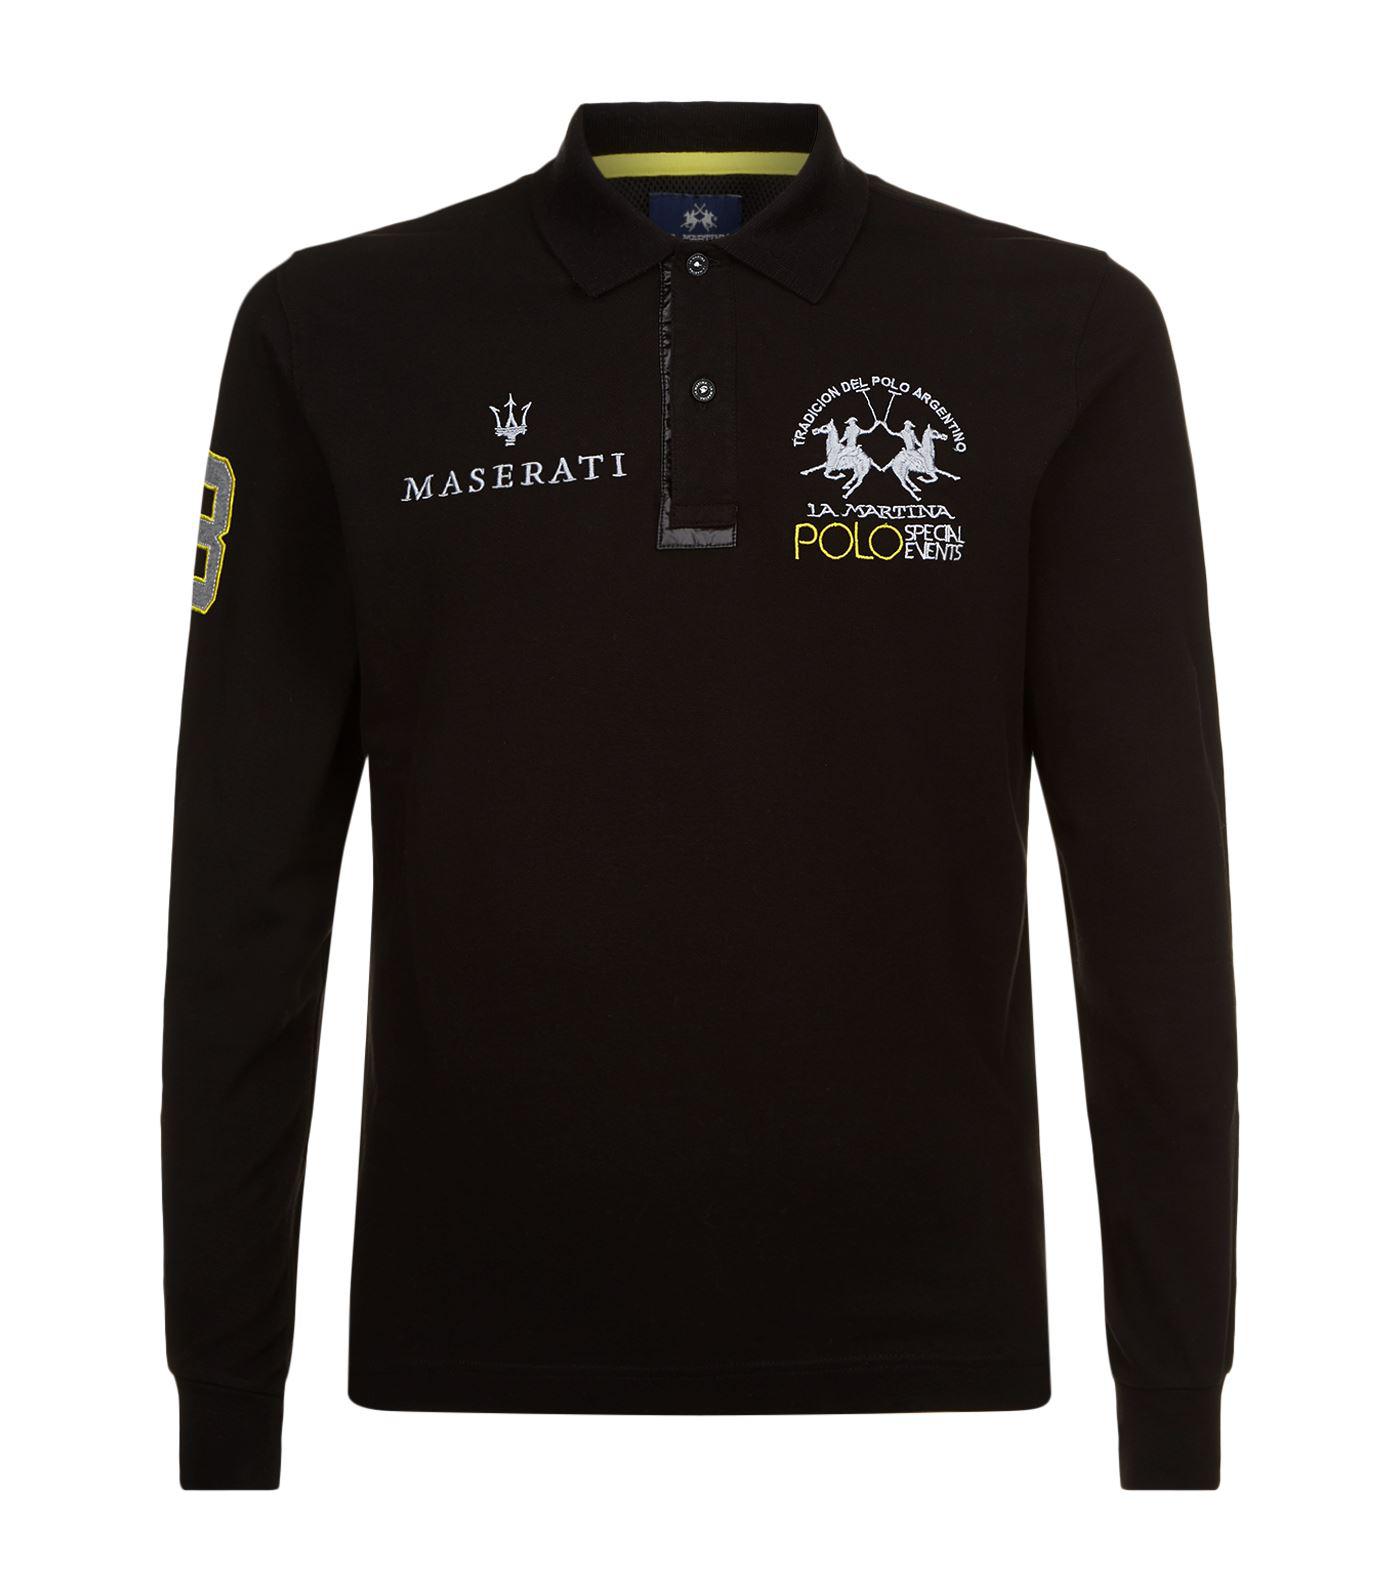 La Martina Maserati Polo Shirt in Black for Men - Lyst